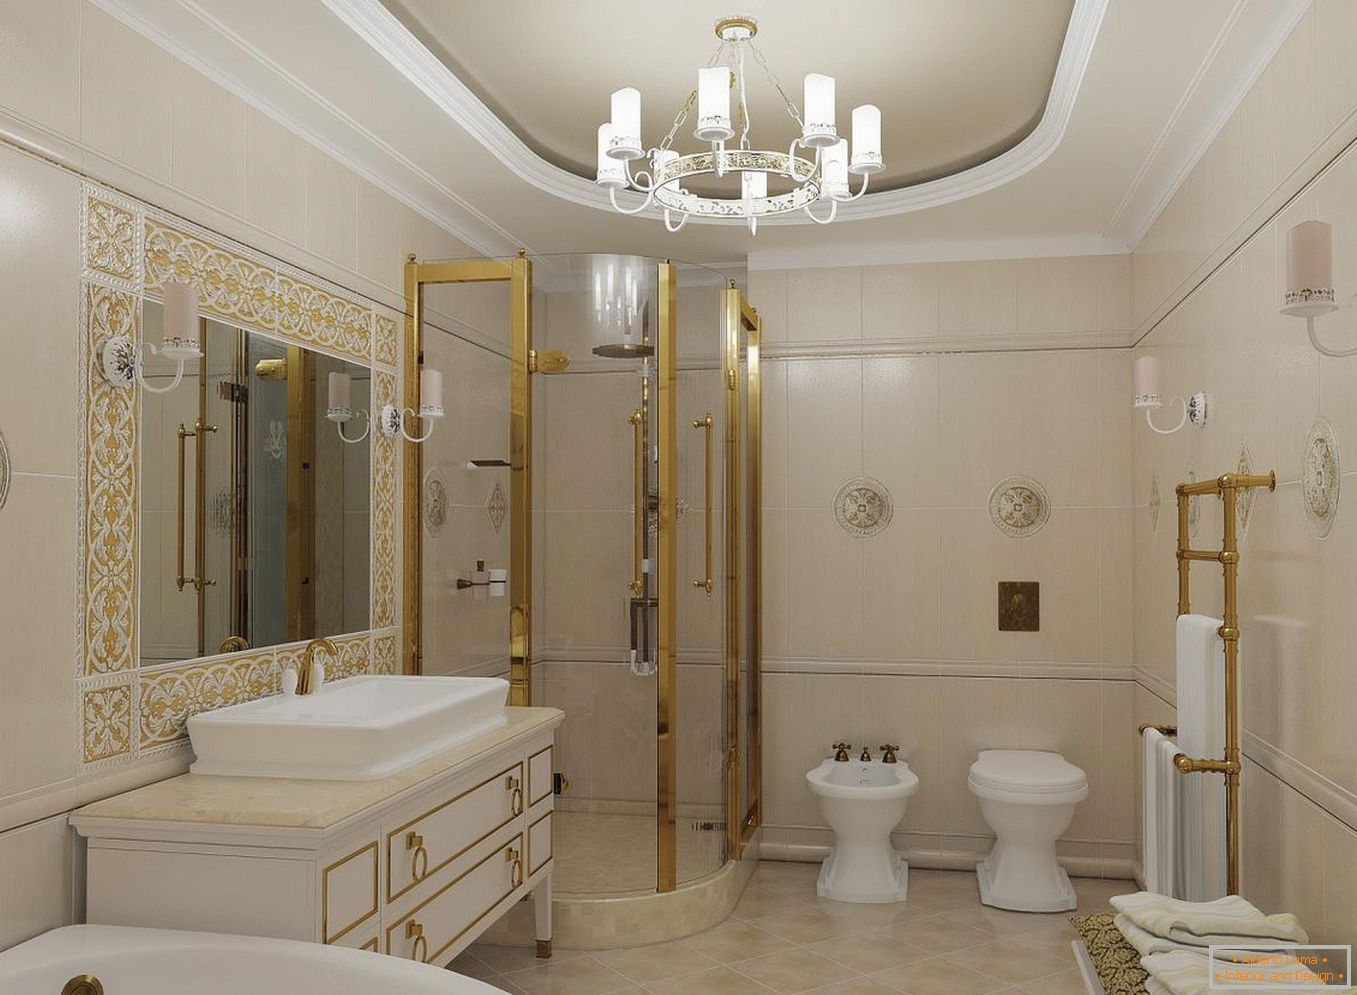 Cabină de duș в ванной в классическом стиле